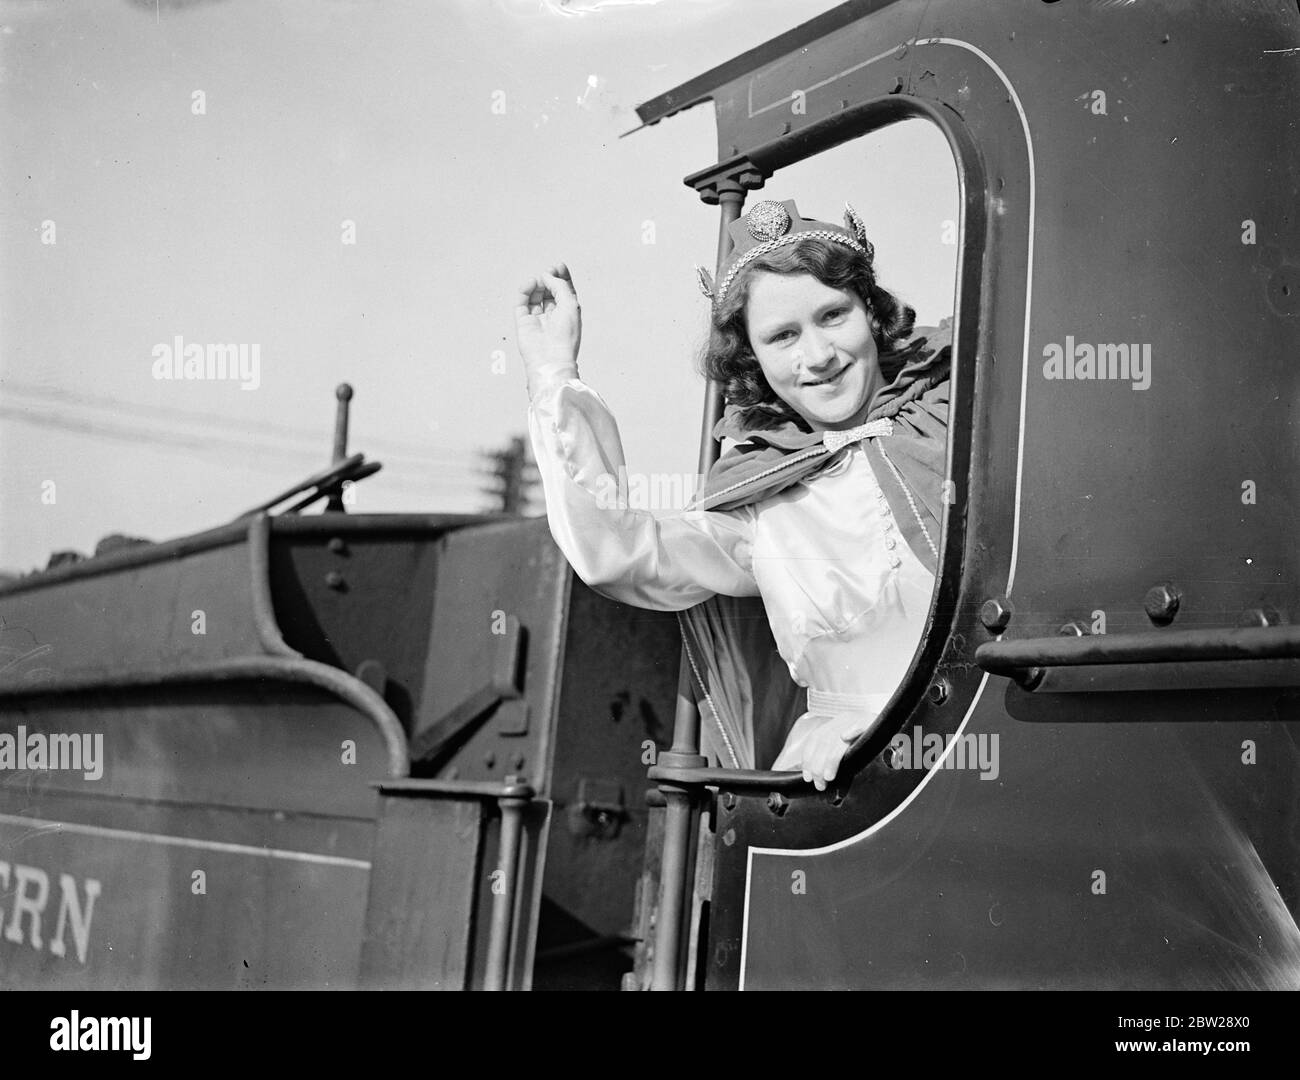 Faversham elegge 15 1/2-anno-vecchia ragazza come prima 'reclamo ferroviario'. 15 1/2-year-old Miss Lily Sparrow è stata eletta da Faversham, Kent, come sua prima regina ferroviaria ad essere un candidato per il titolo di All England Railway Queen, 1938. Dopo essere stata incoronata dalla moglie di Faversham Stationmaster, la signora W Robins, partecipa alla processione annuale del Carnevale. 4 novembre 1937 Foto Stock